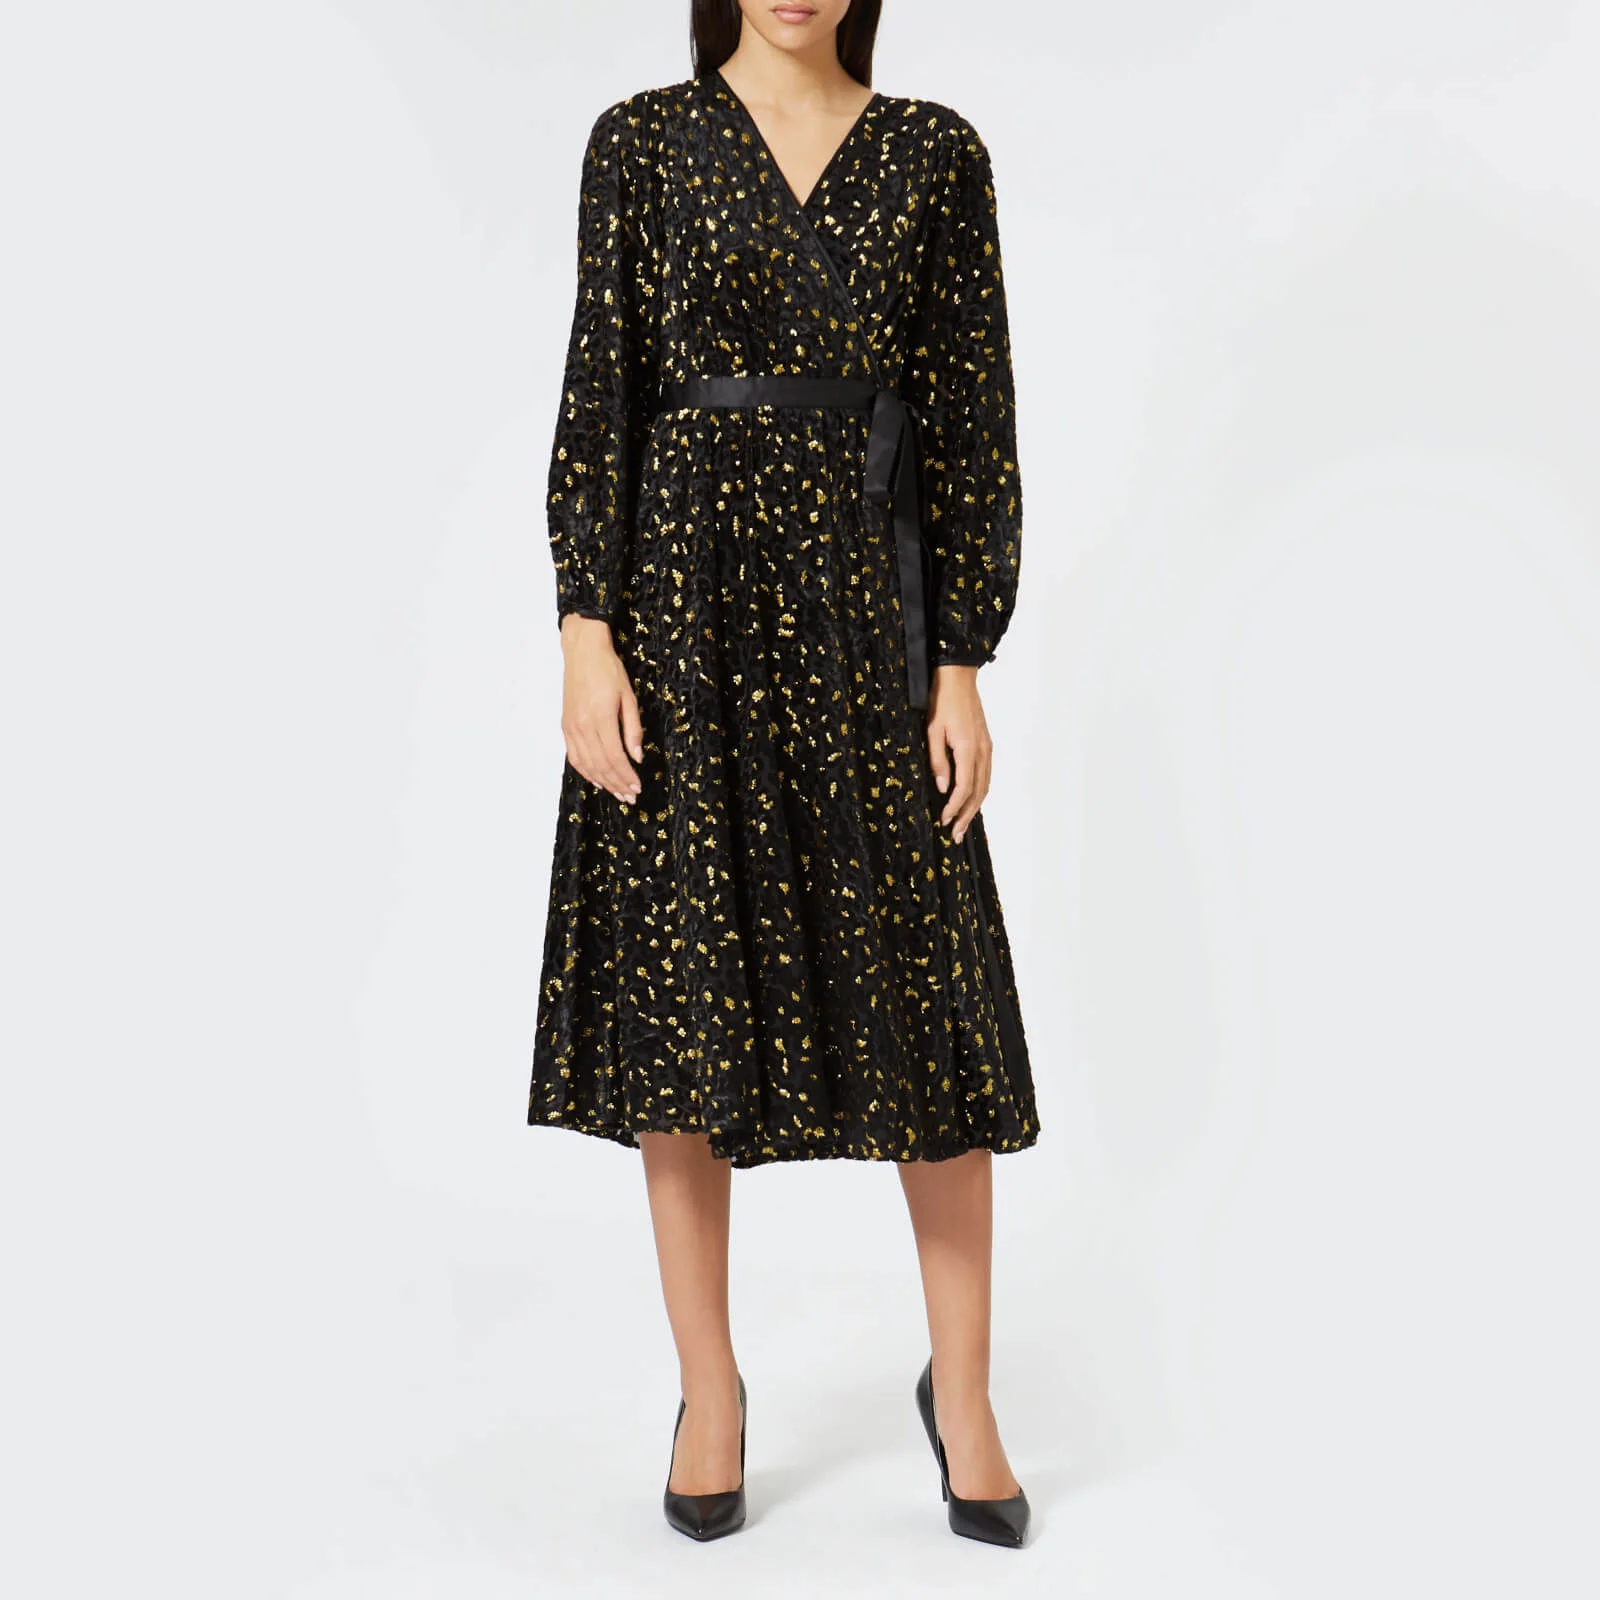 Diane von Furstenberg Women's Animal Devore Wrap Dress - Black/Gold Image 1